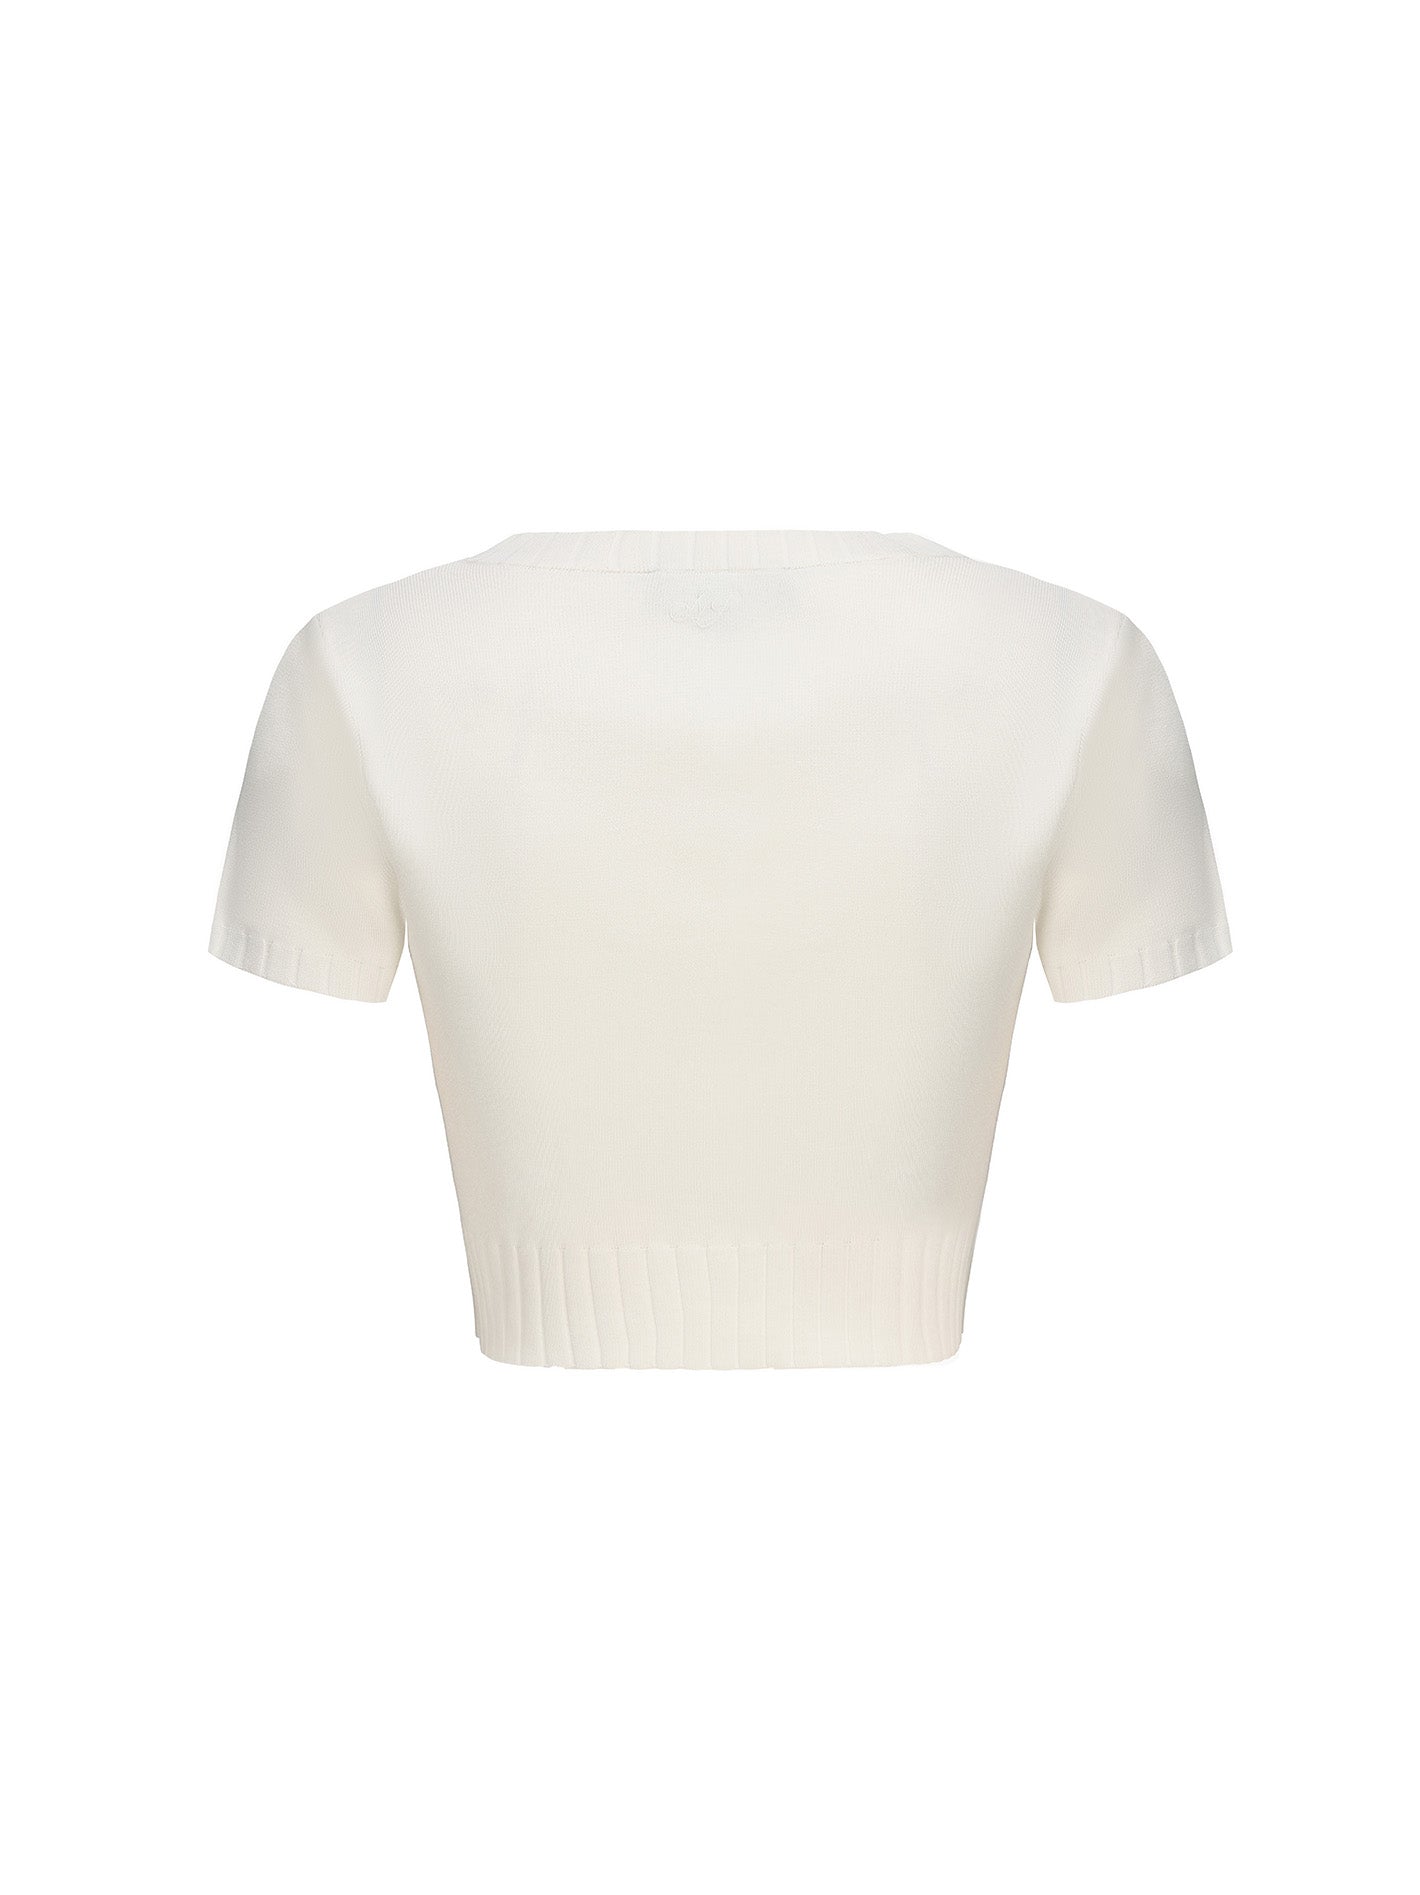 Kennedy Knit Top Set (White)